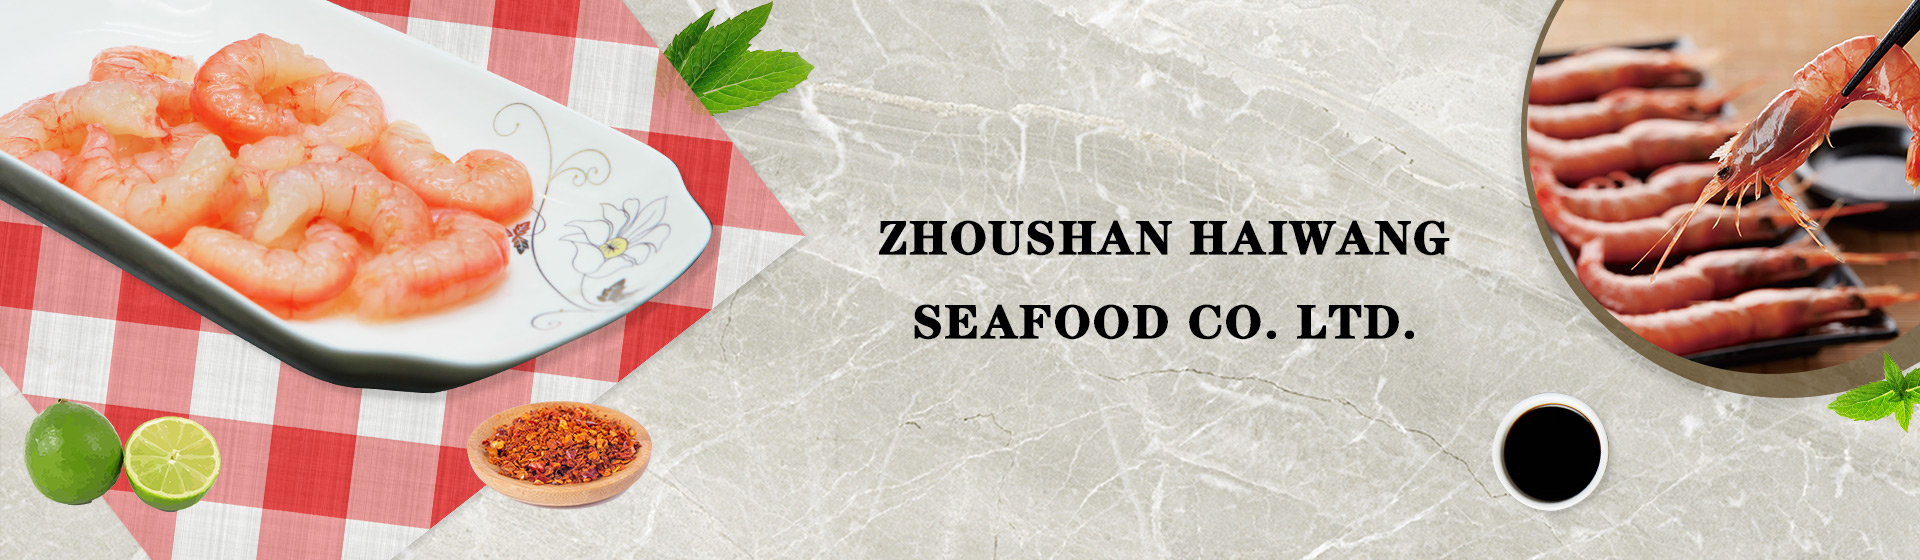 Zhoushan Haiwang Seafood Co., Ltd.